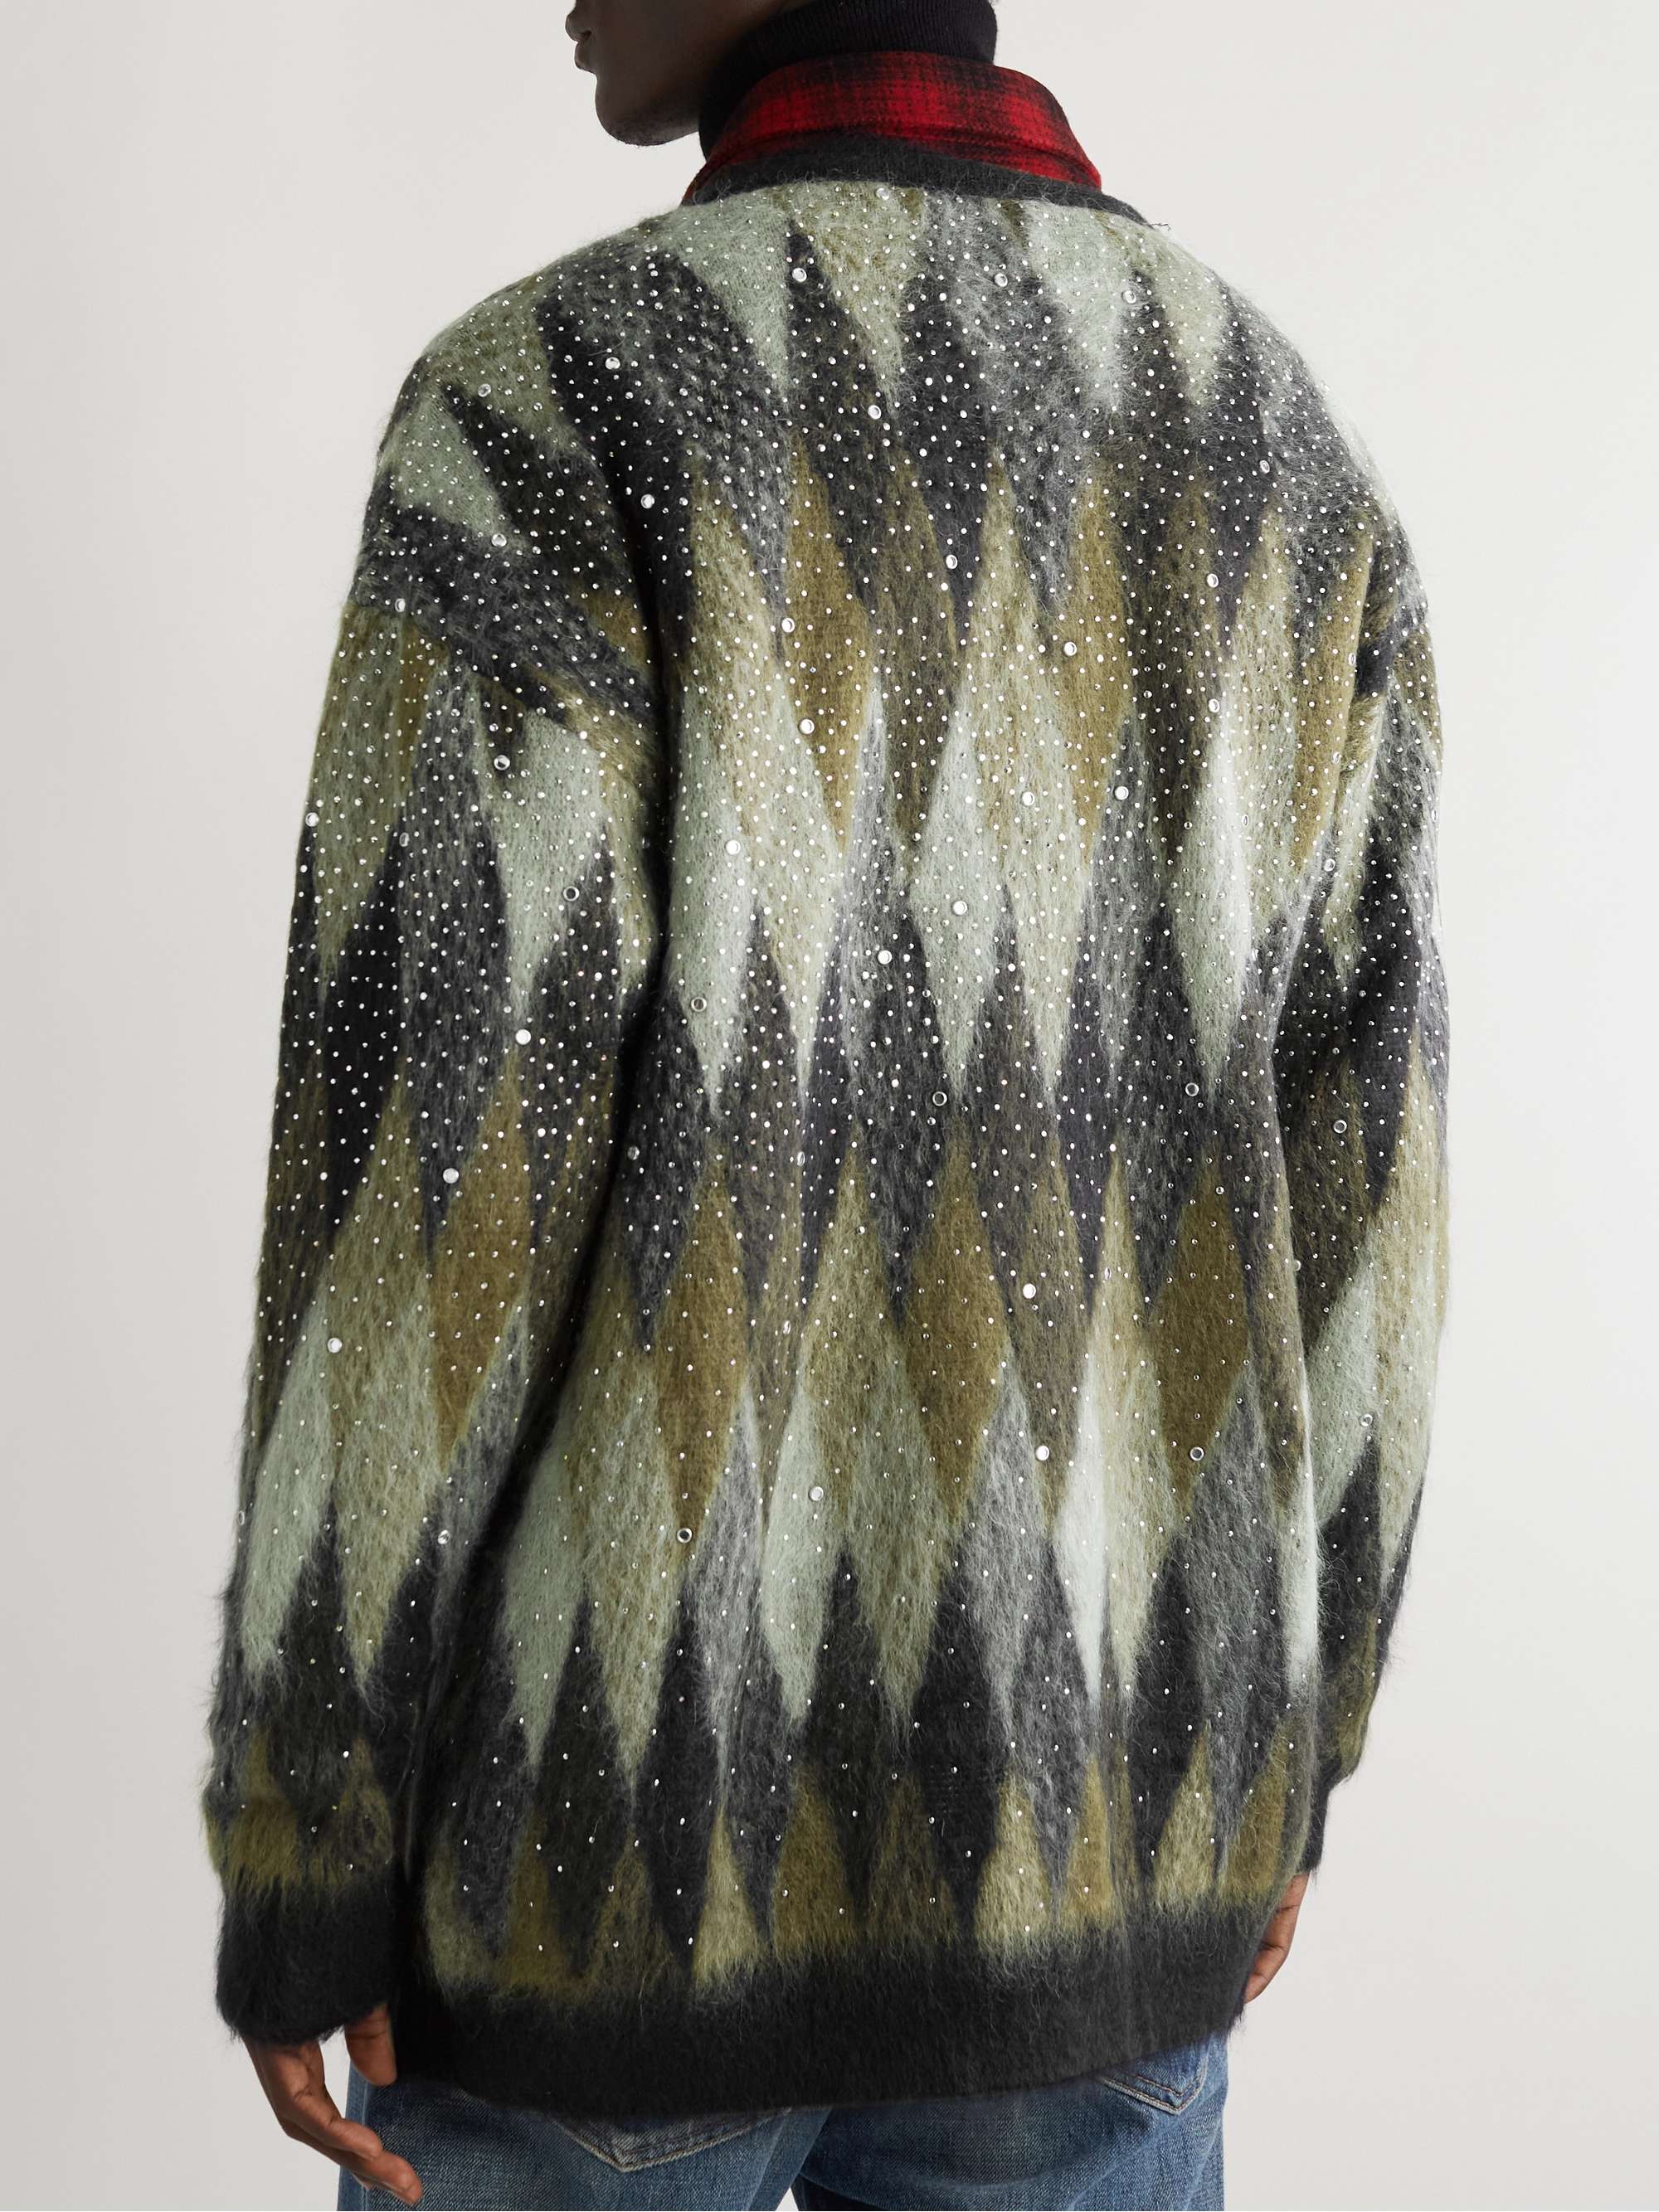 CELINE HOMME Sequin-Embellished Argyle Textured-Knit Cardigan